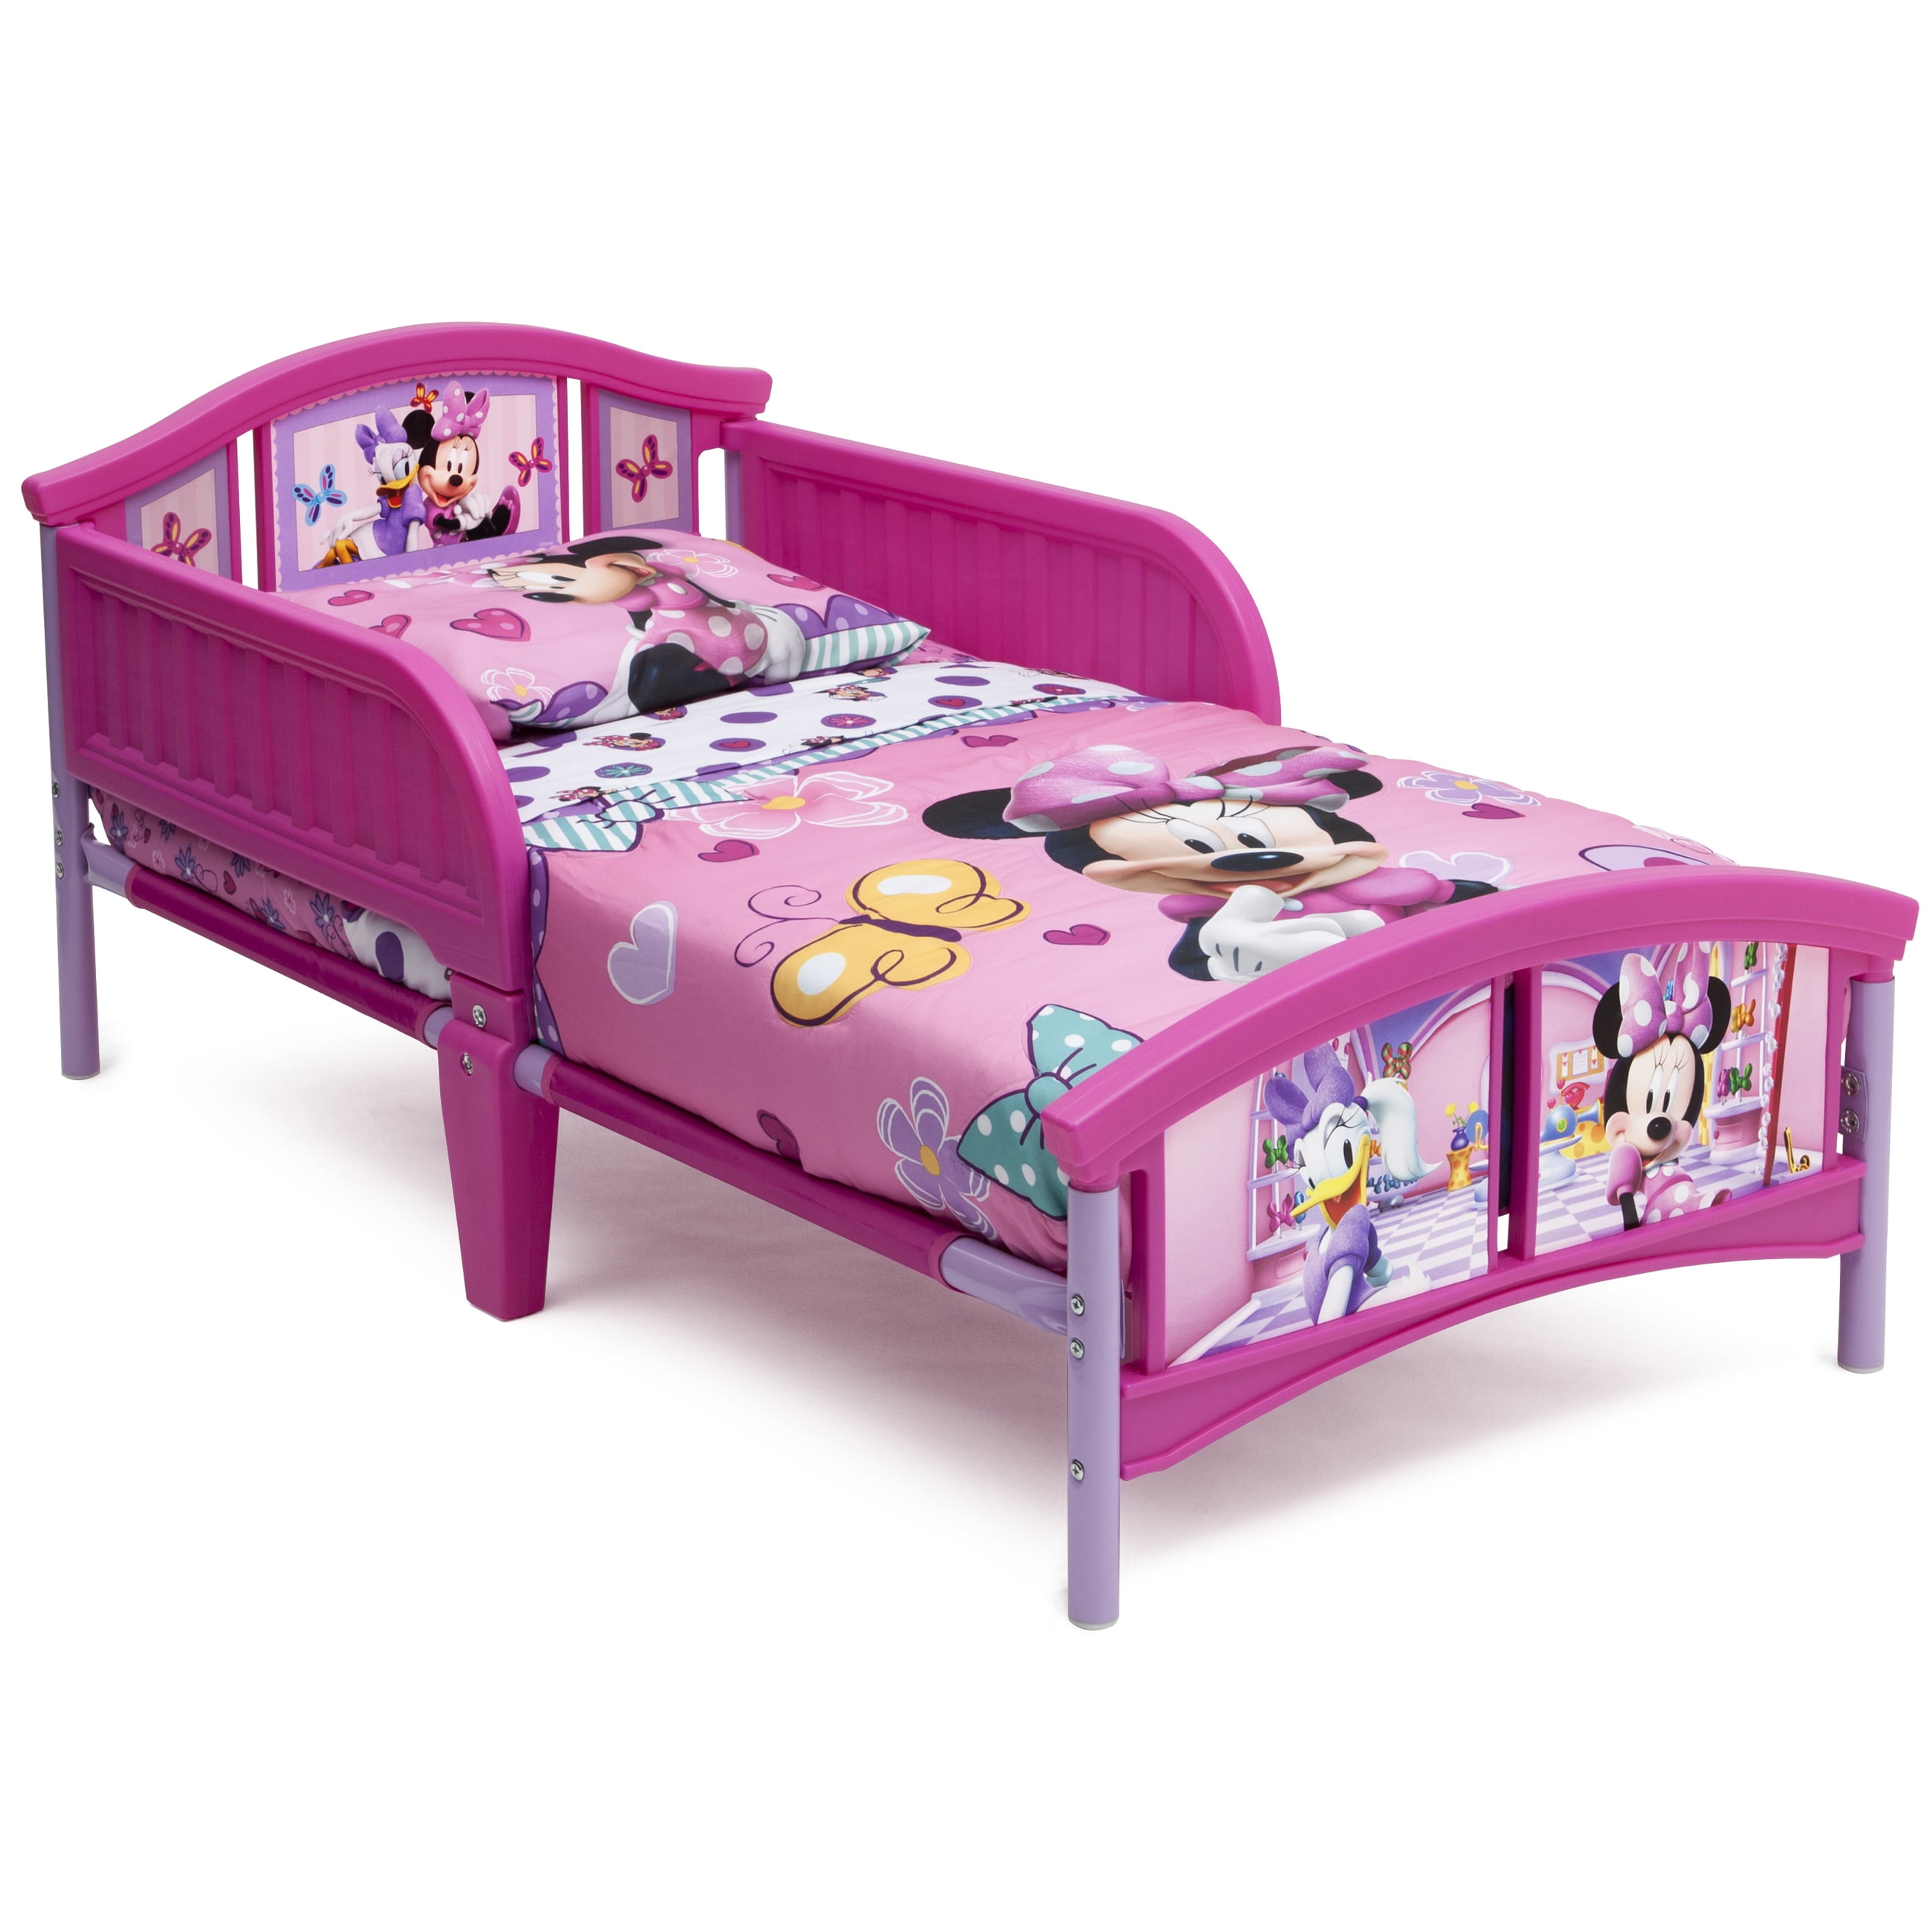 Delta Children Disney Minnie Mouse Toddler Bed, Pink Walmart.com